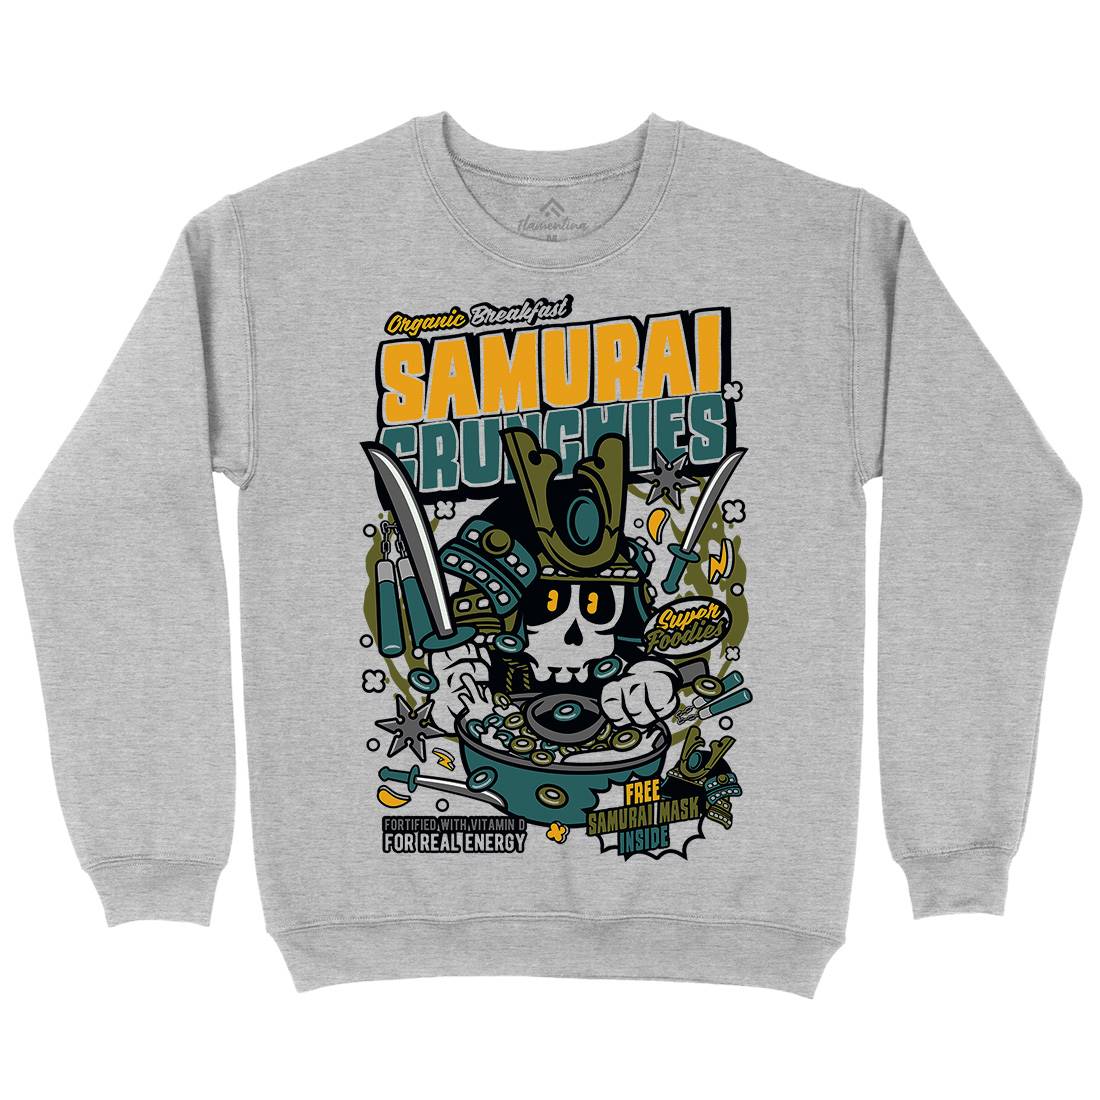 Samurai Crunches Mens Crew Neck Sweatshirt Food C639